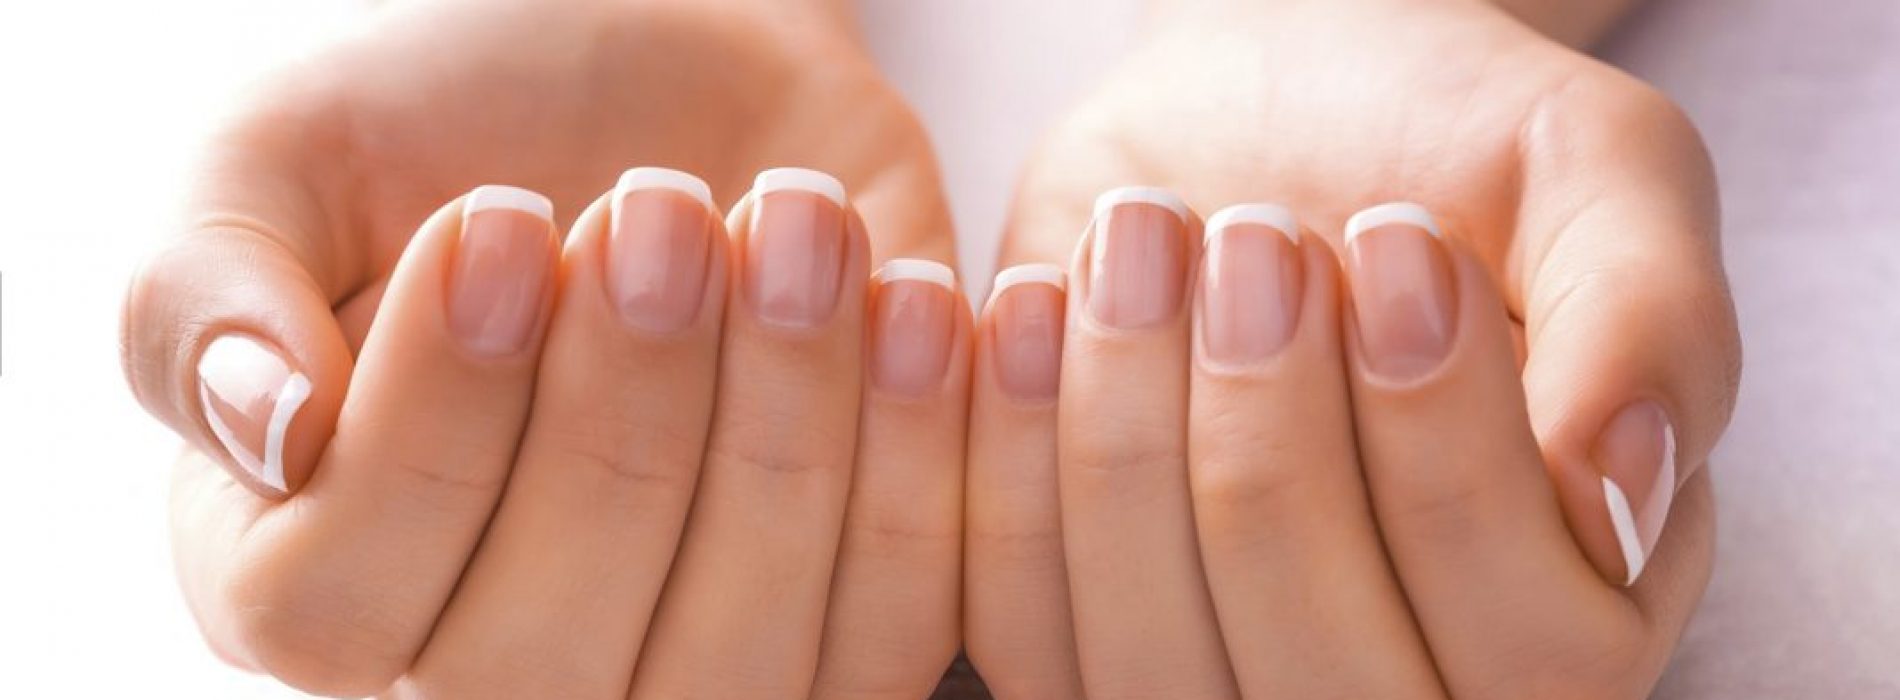 Dé trend in de beautywereld: Een recept dat zorgt voor mooie en sterke nagels.